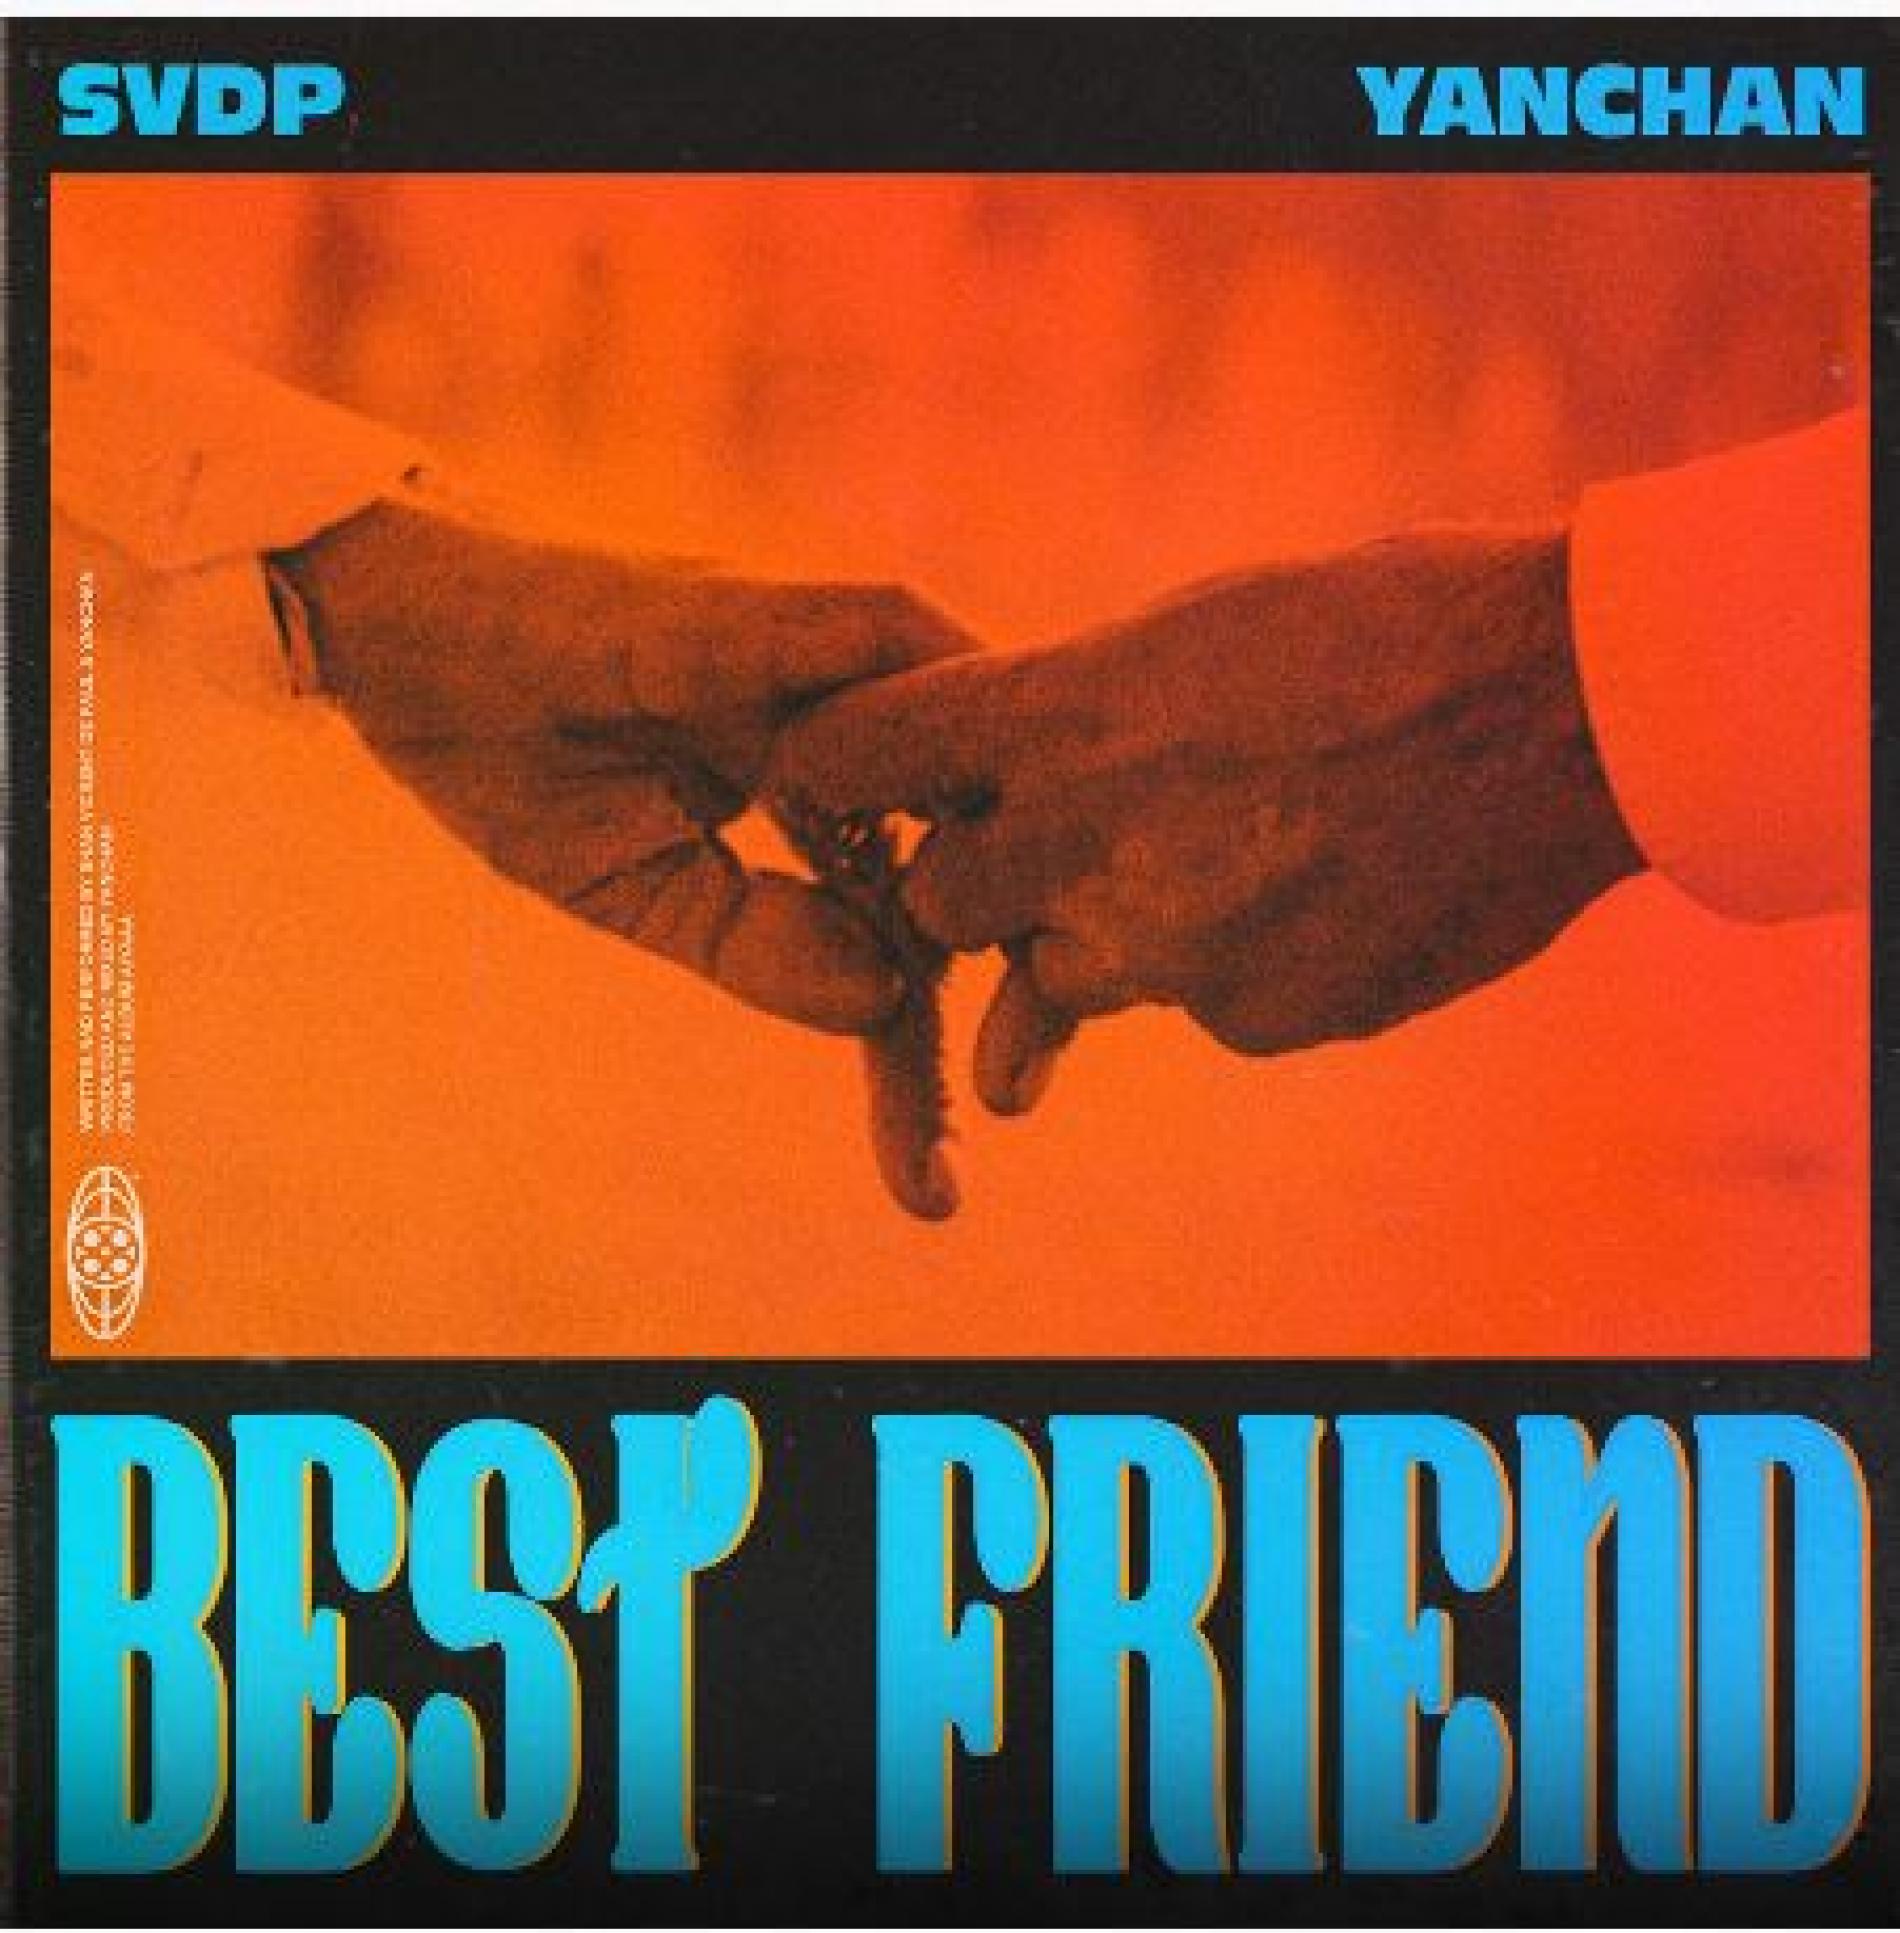 Shan Vincent de Paul & Yanchan – Best Friend (Official Audio)